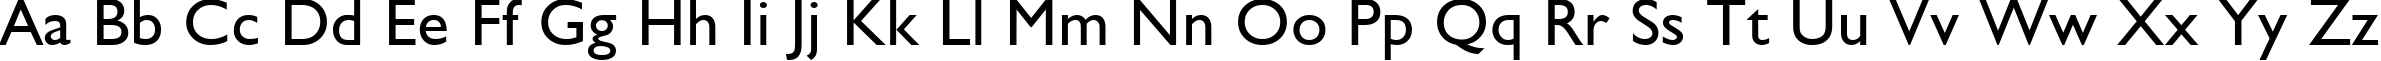 Пример написания английского алфавита шрифтом GillSans